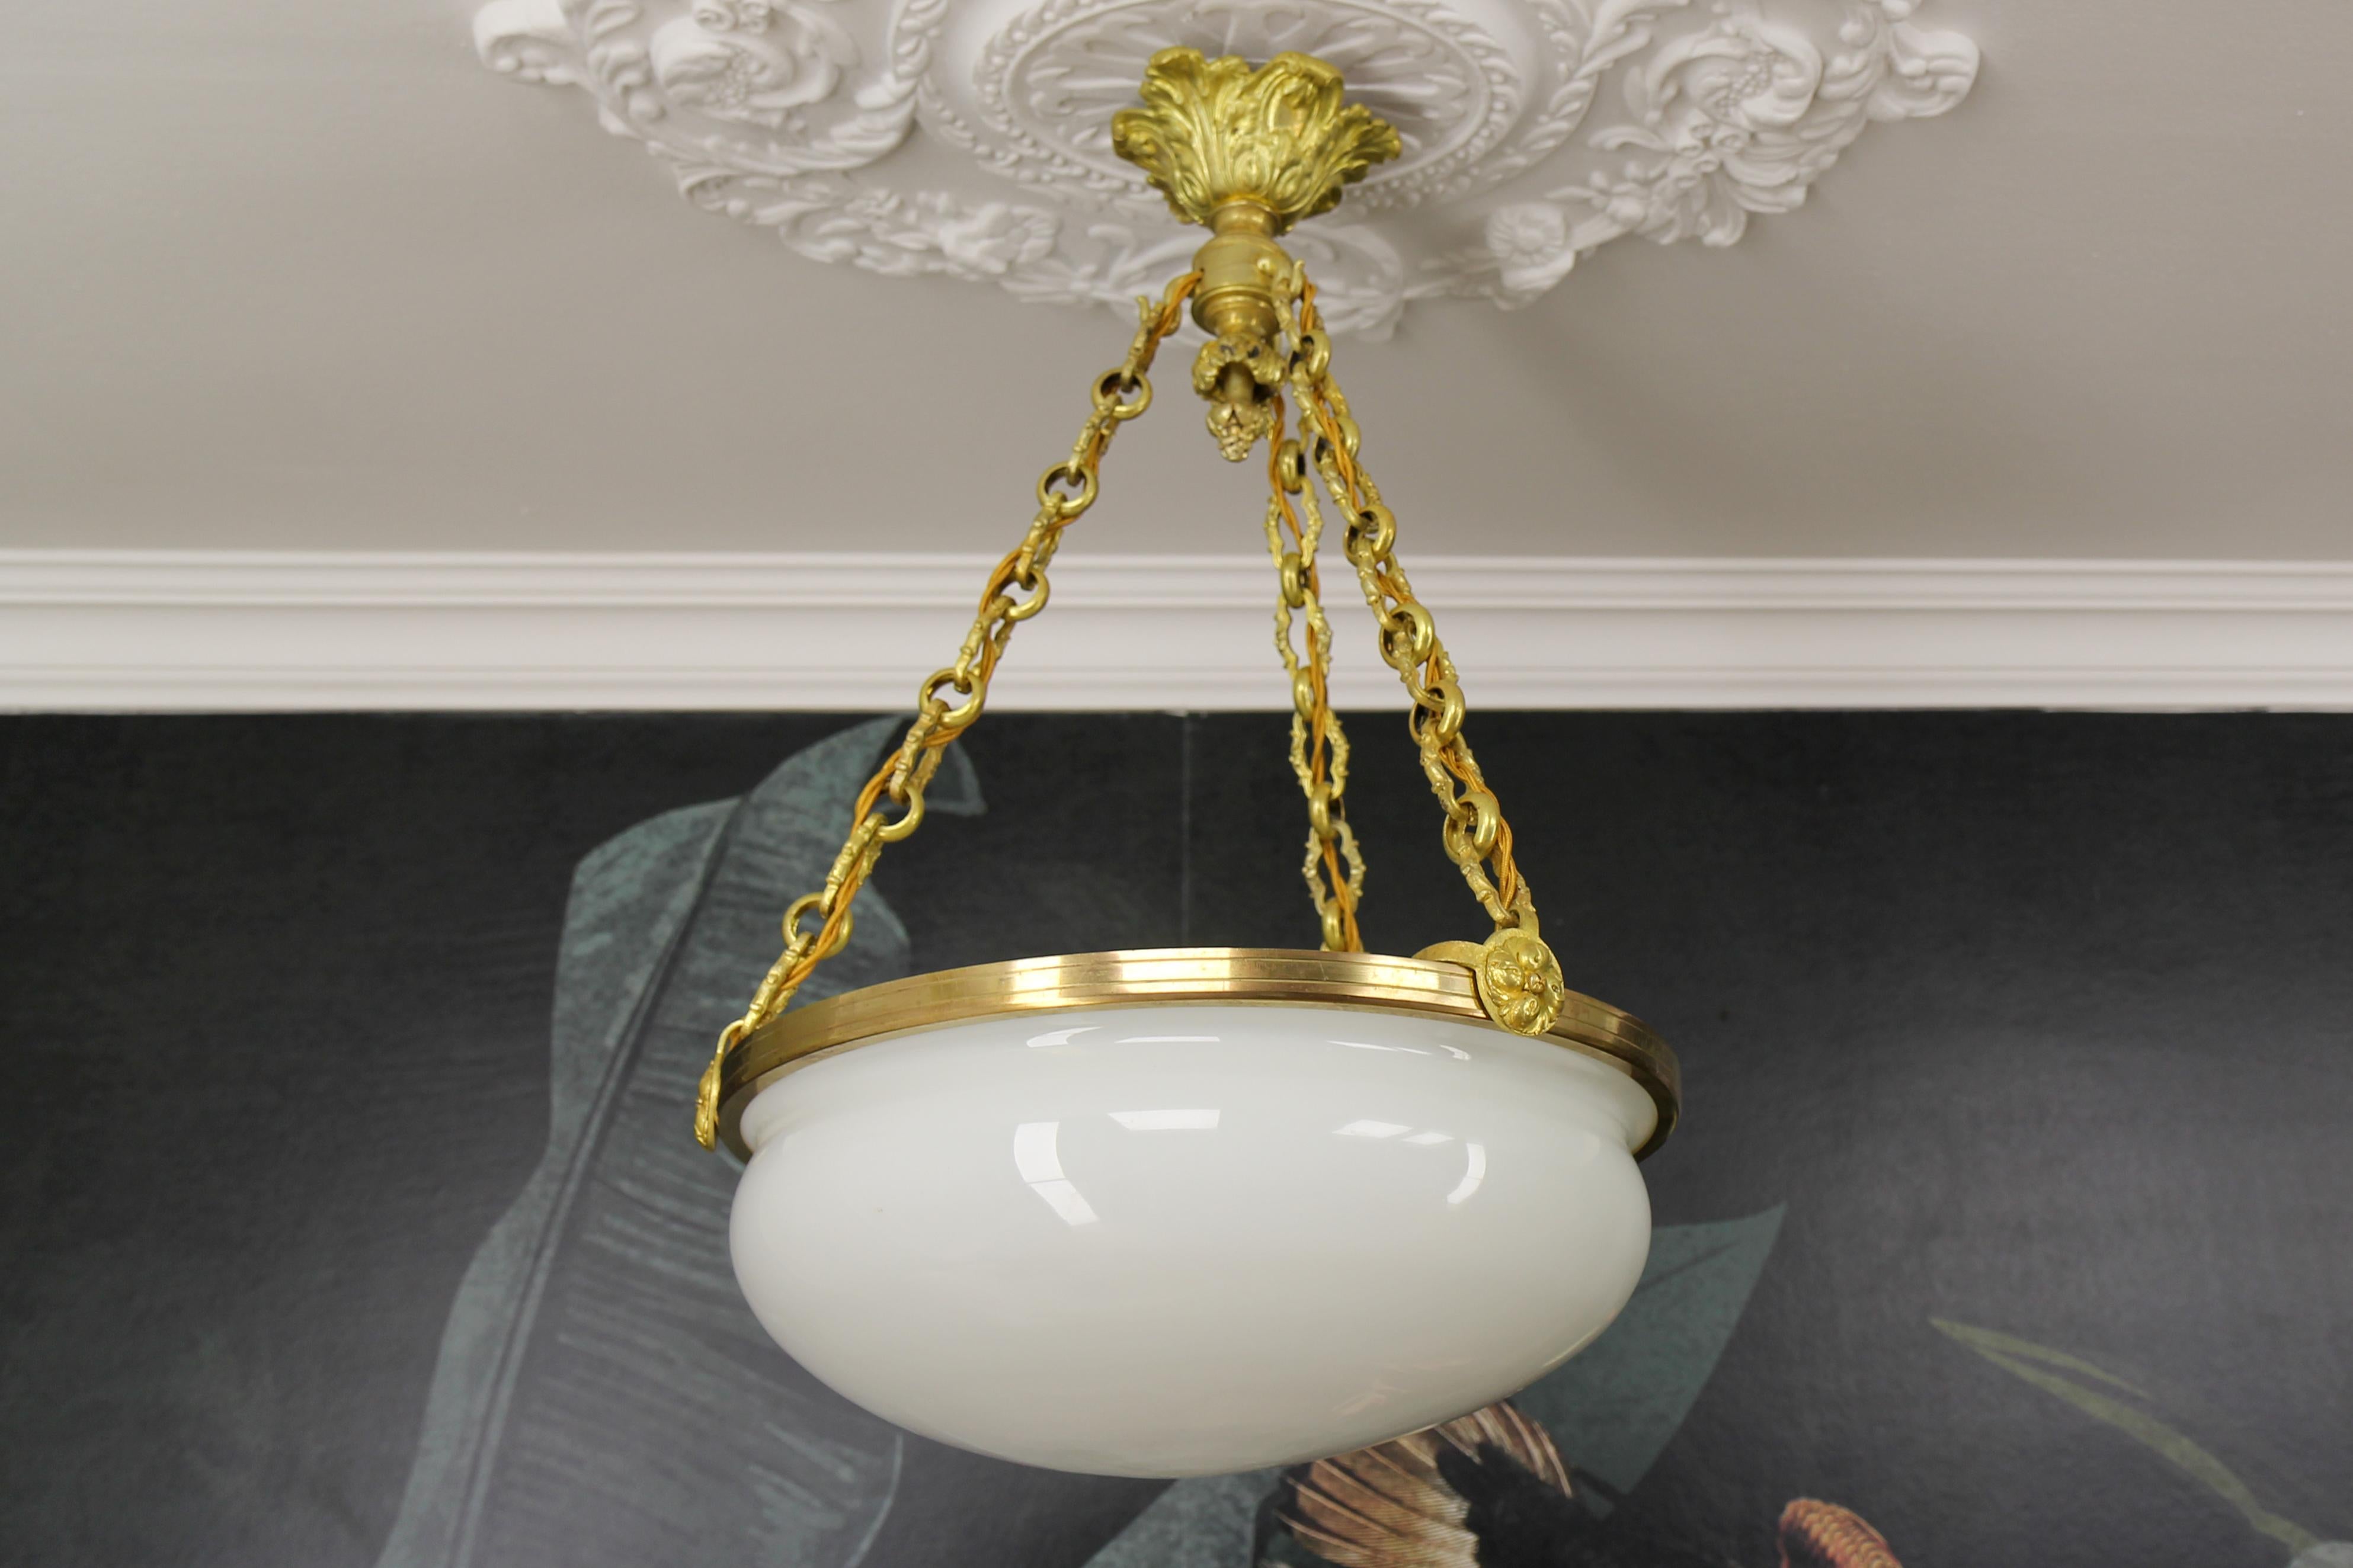 Lustre ancien de style Louis XVI en verre blanc, laiton et bronze, datant d'environ 1920.
Ce magnifique lustre français à trois lumières est composé d'un abat-jour en verre blanc fixé par un anneau en laiton et suspendu à des chaînes en bronze